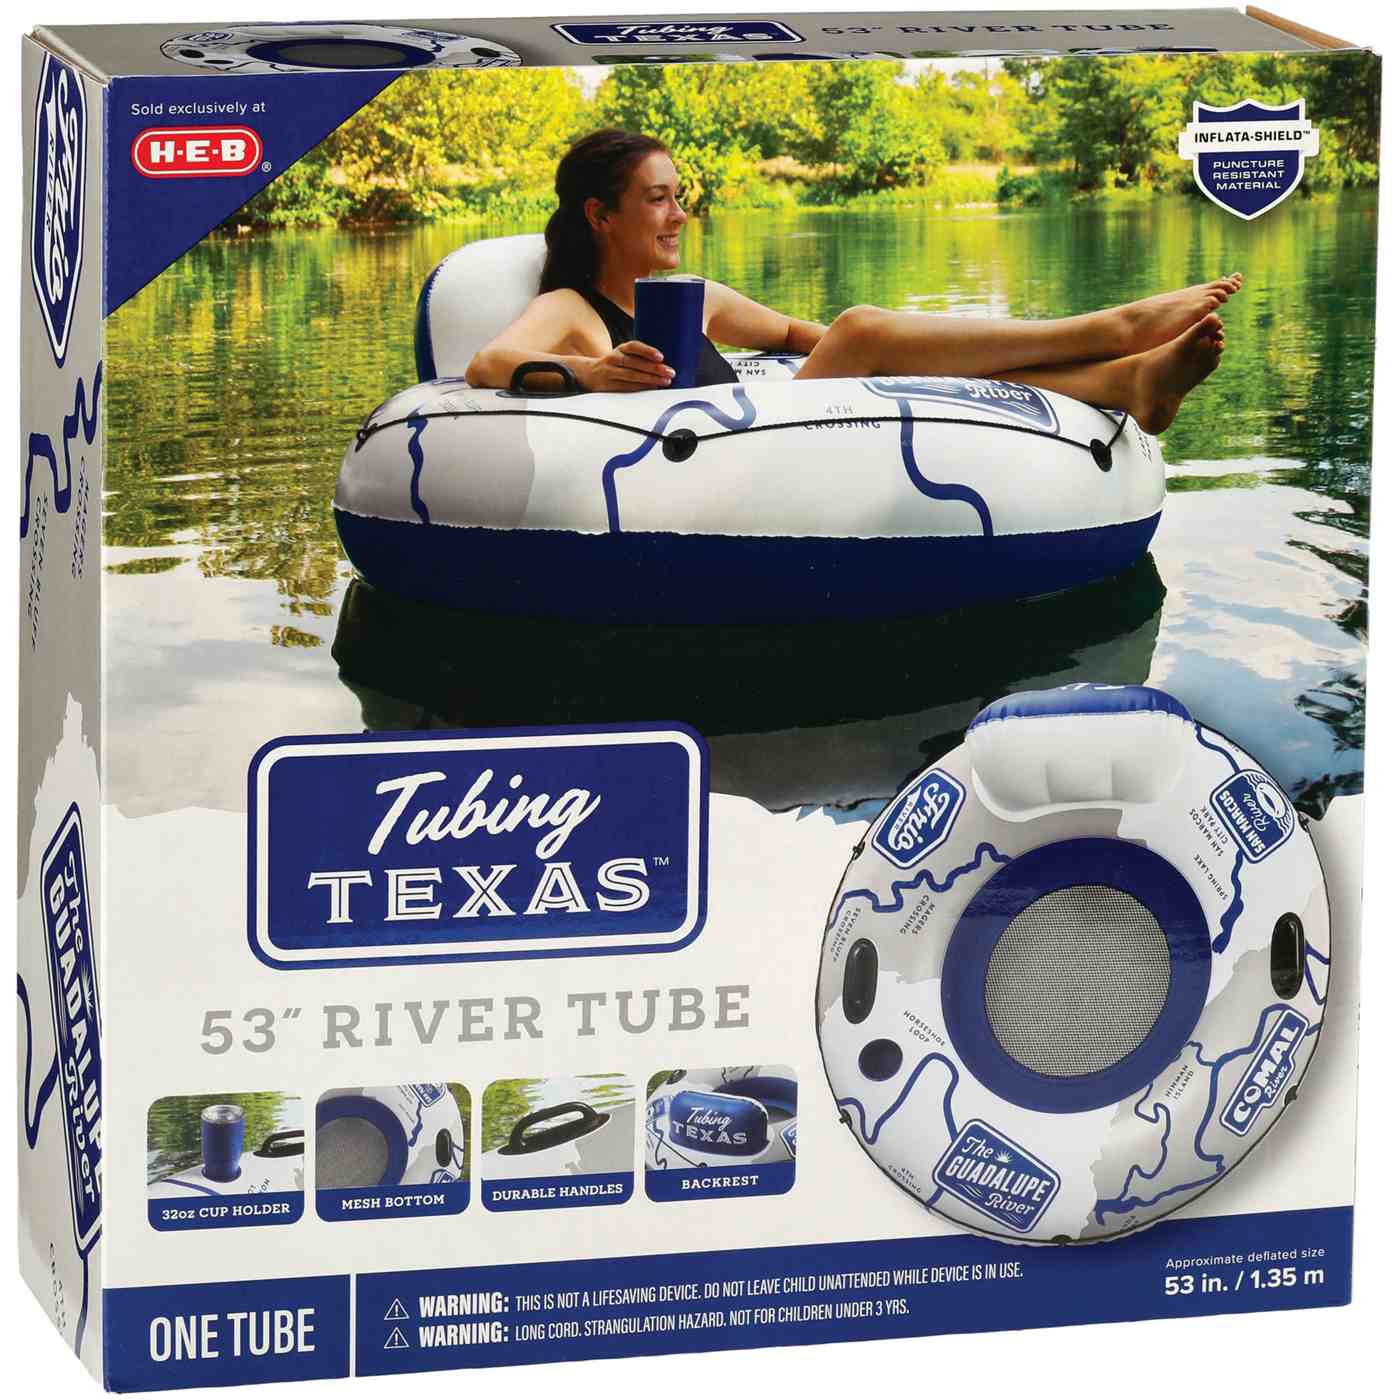 H-E-B Tubing Texas Inflatable River Tube - Gray; image 1 of 2